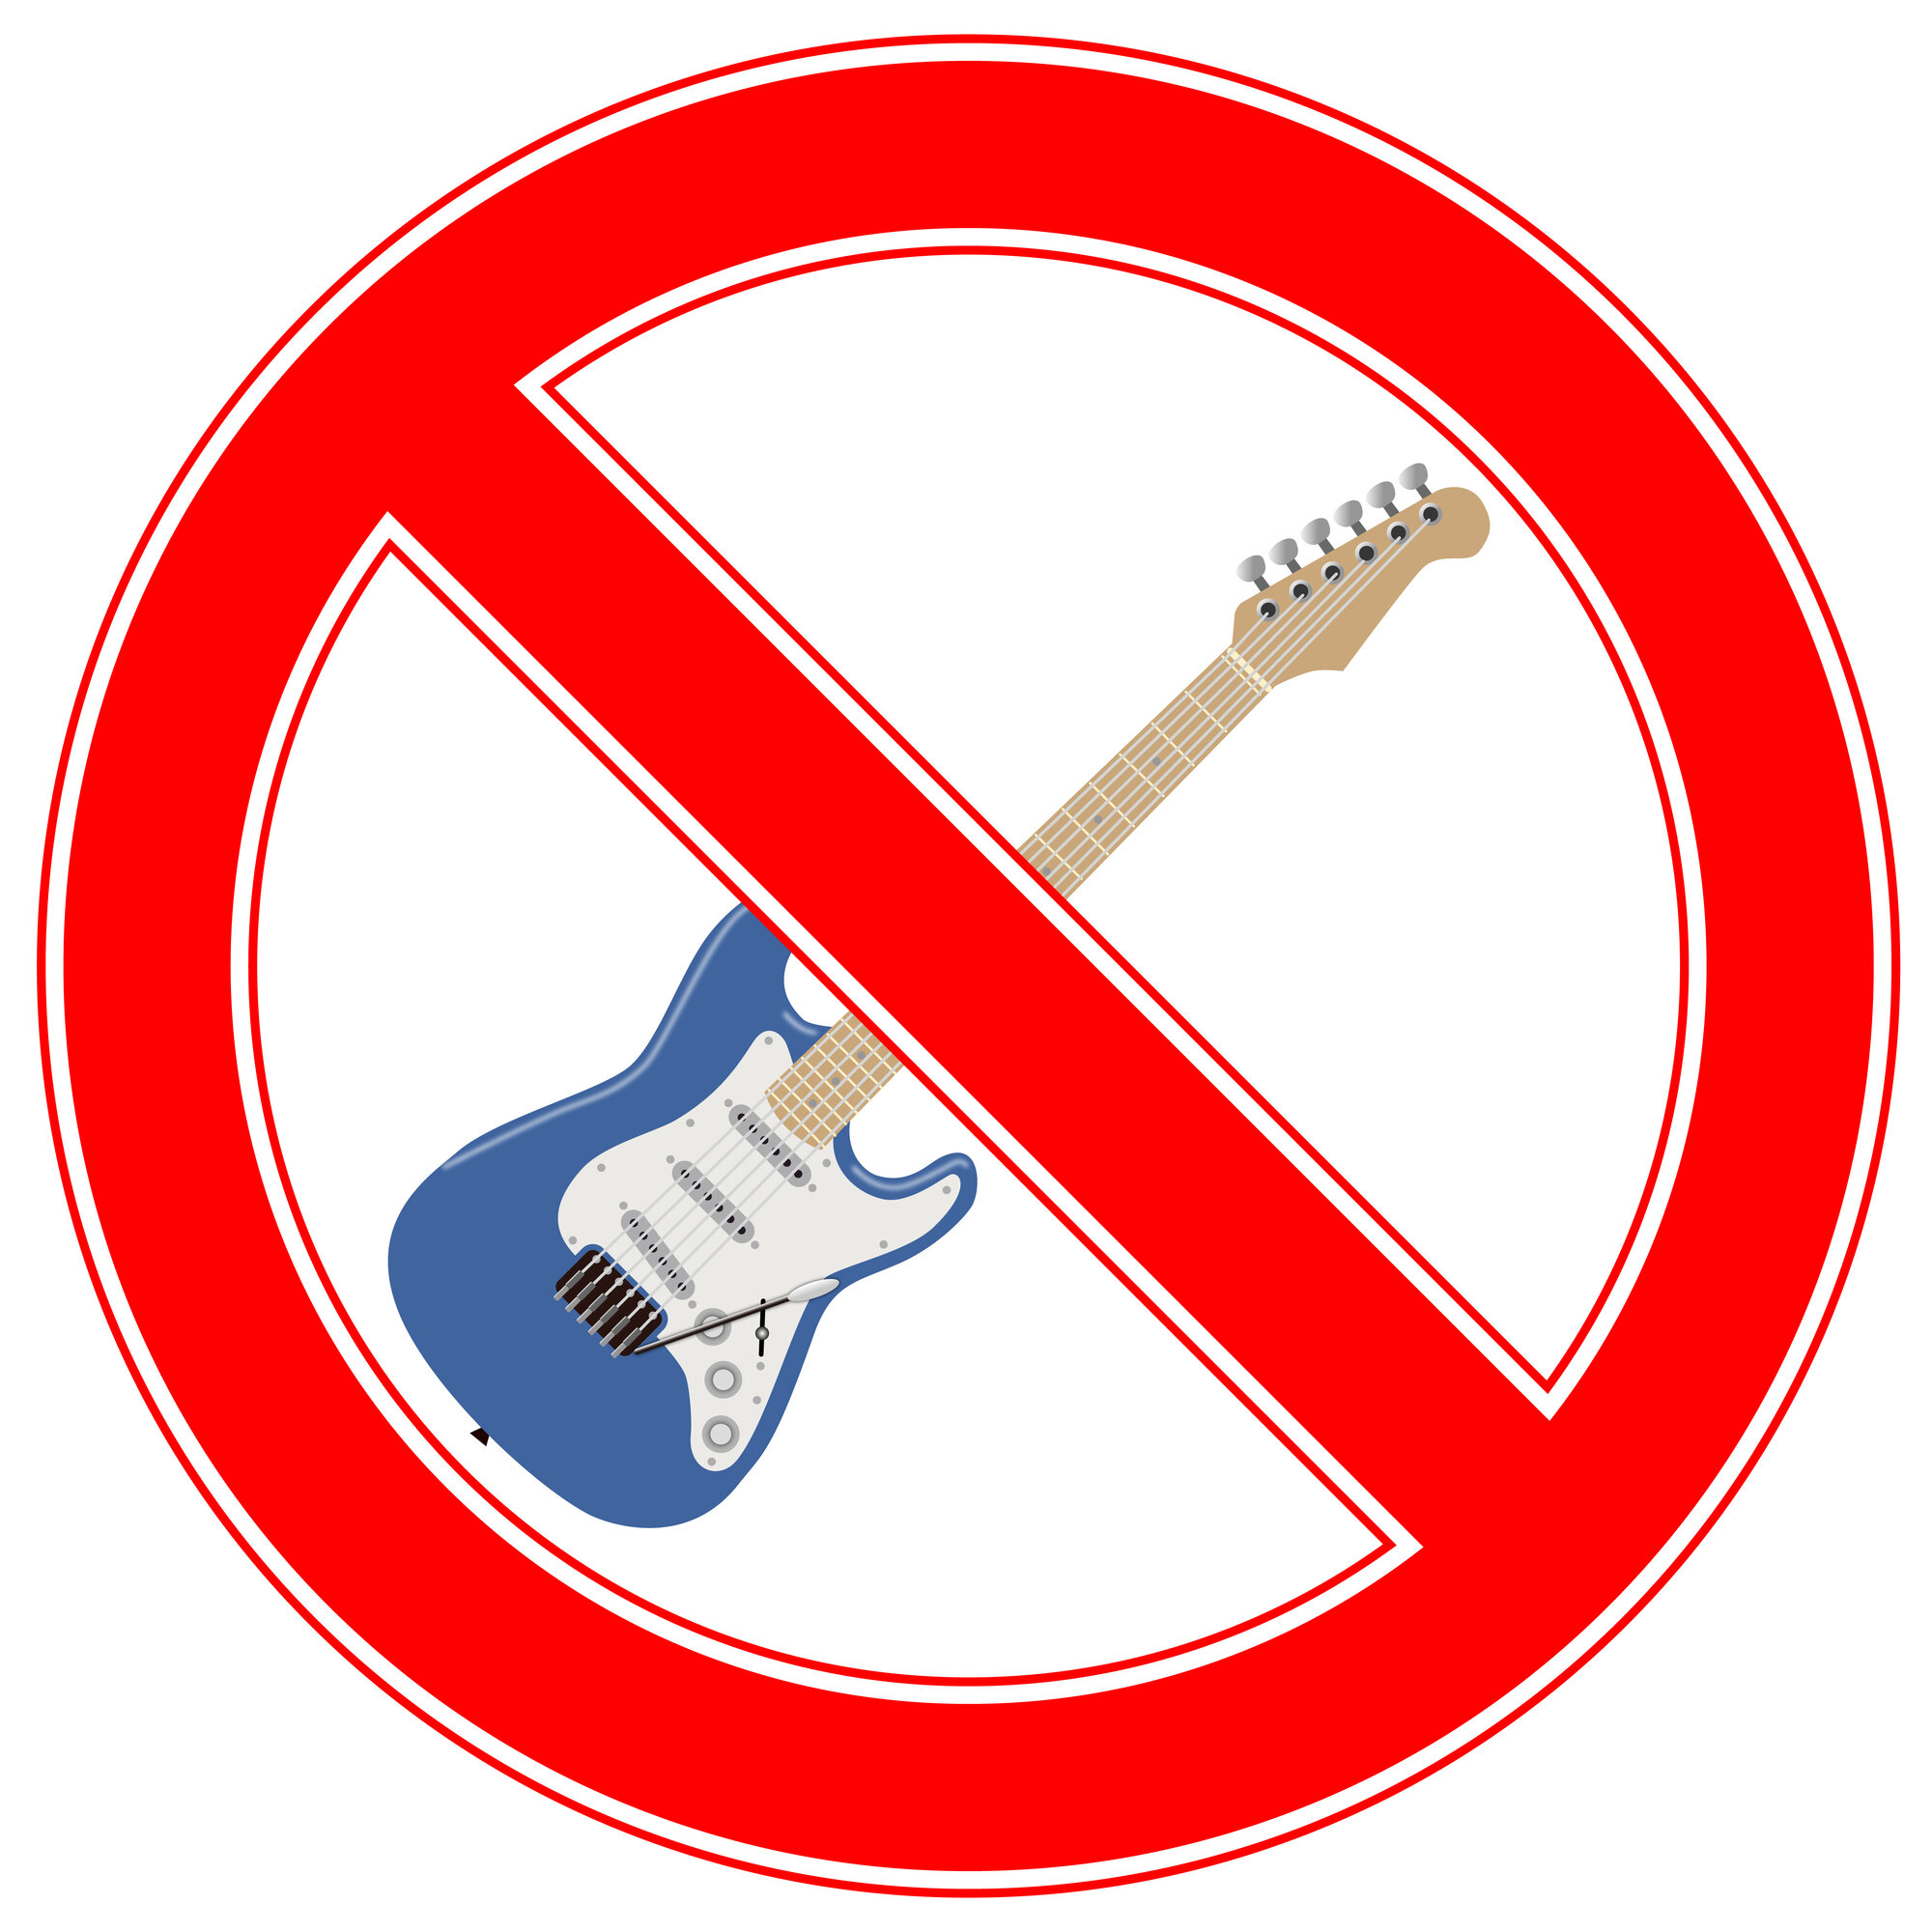 エレキギター禁止.jpg